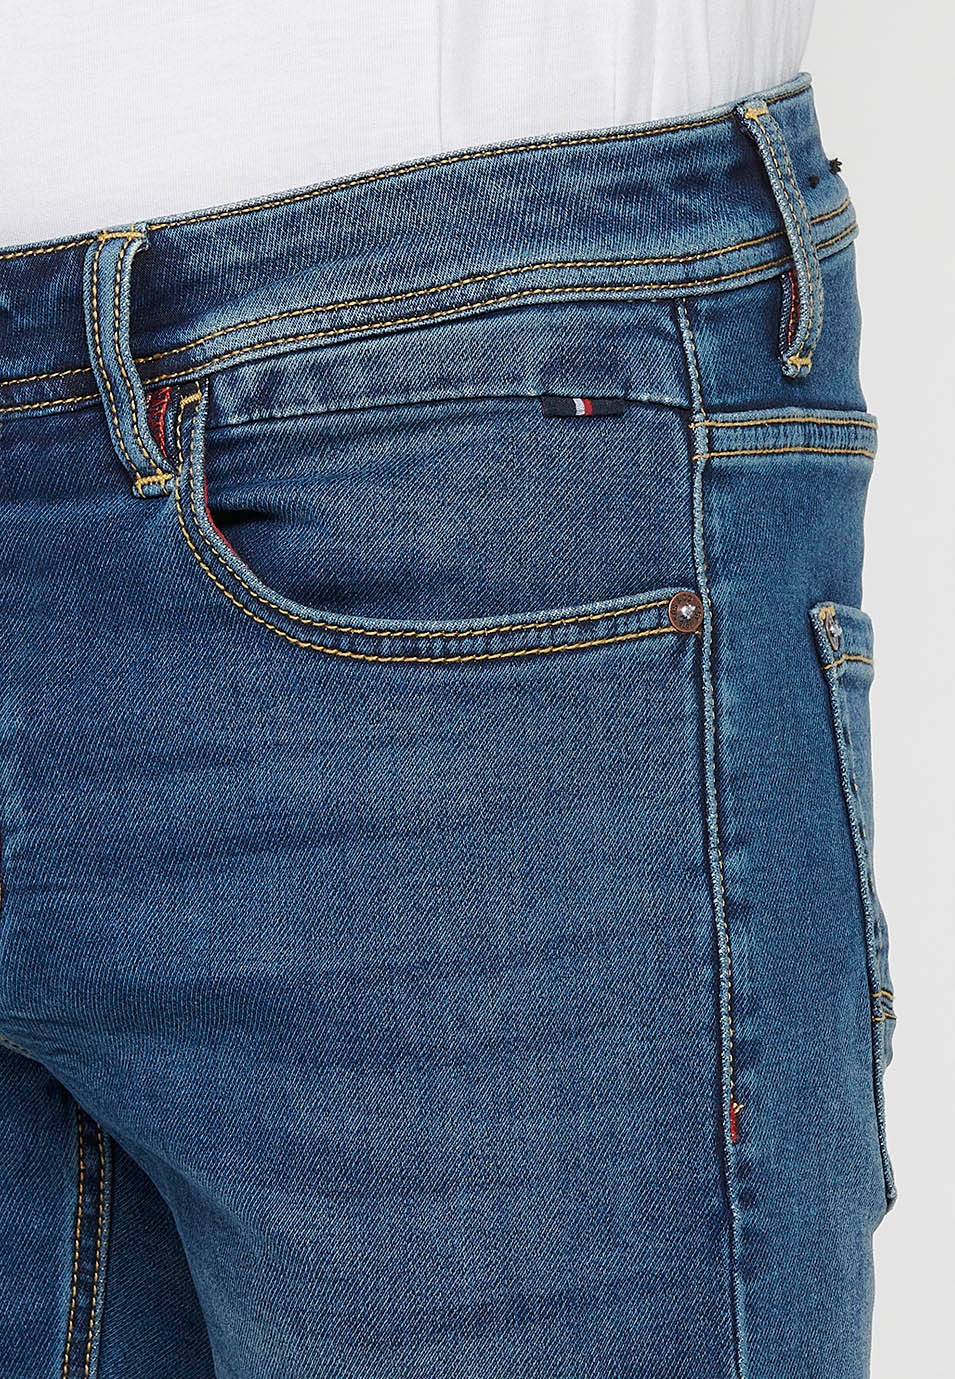 Long slim fit denim pants with five pockets, one match pocket, Blue for Men 4